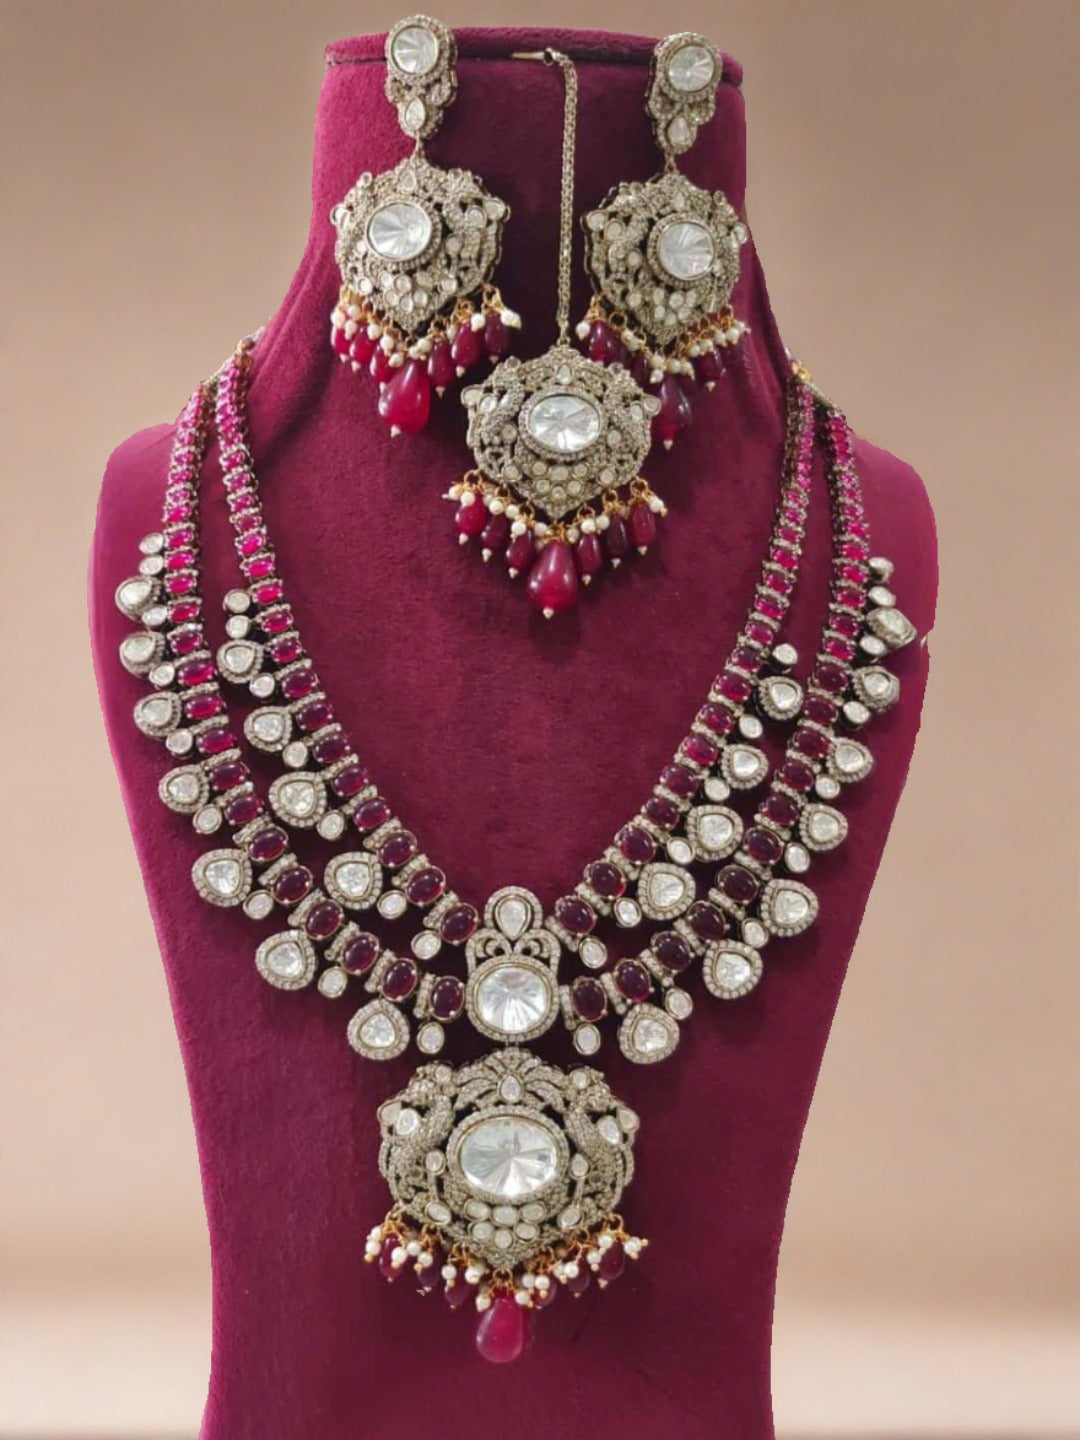 Ishhaara Isha Ambani Inspired Long Emerald Necklace